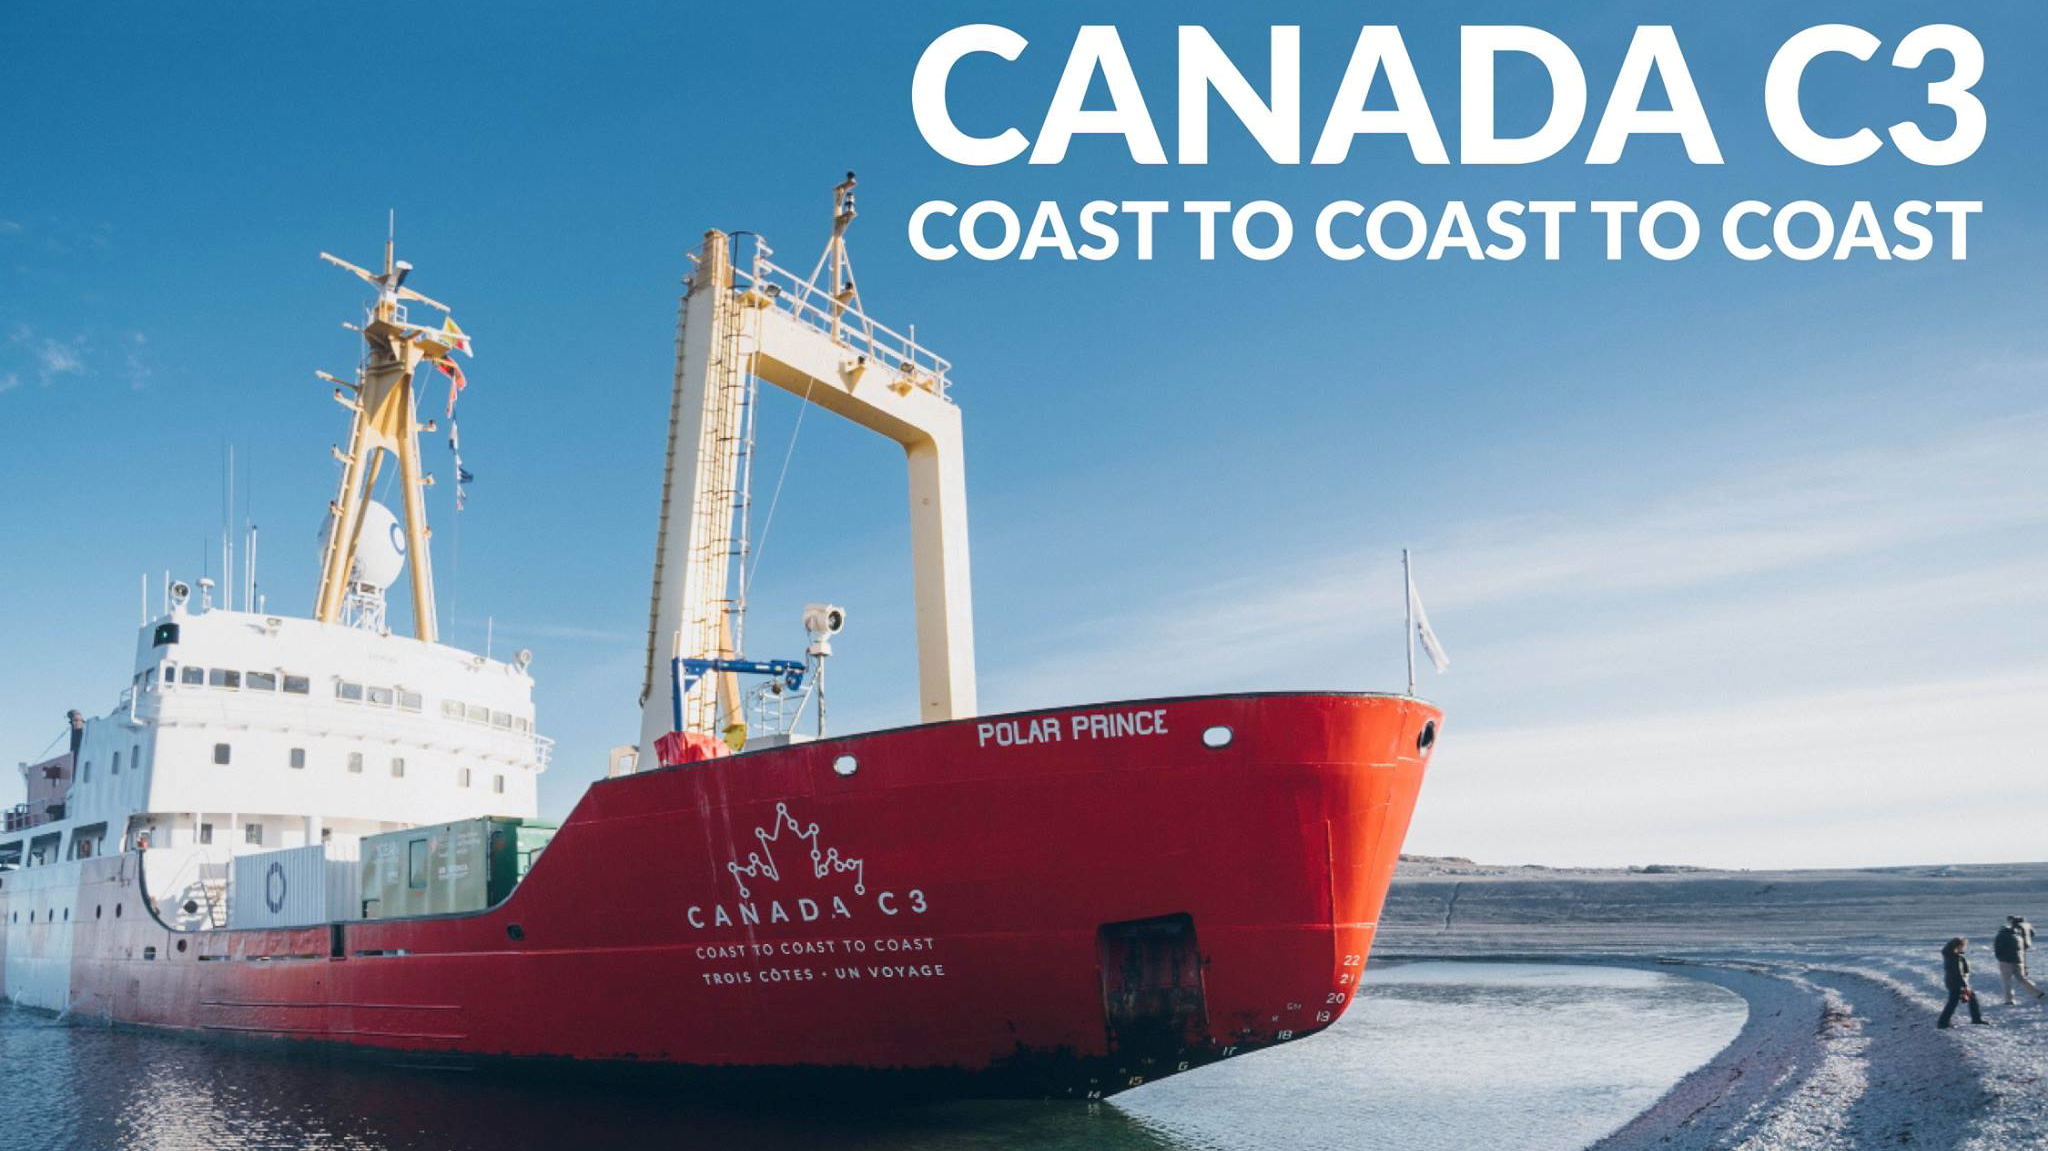 Canada C3 - Coast to Coast to Coast